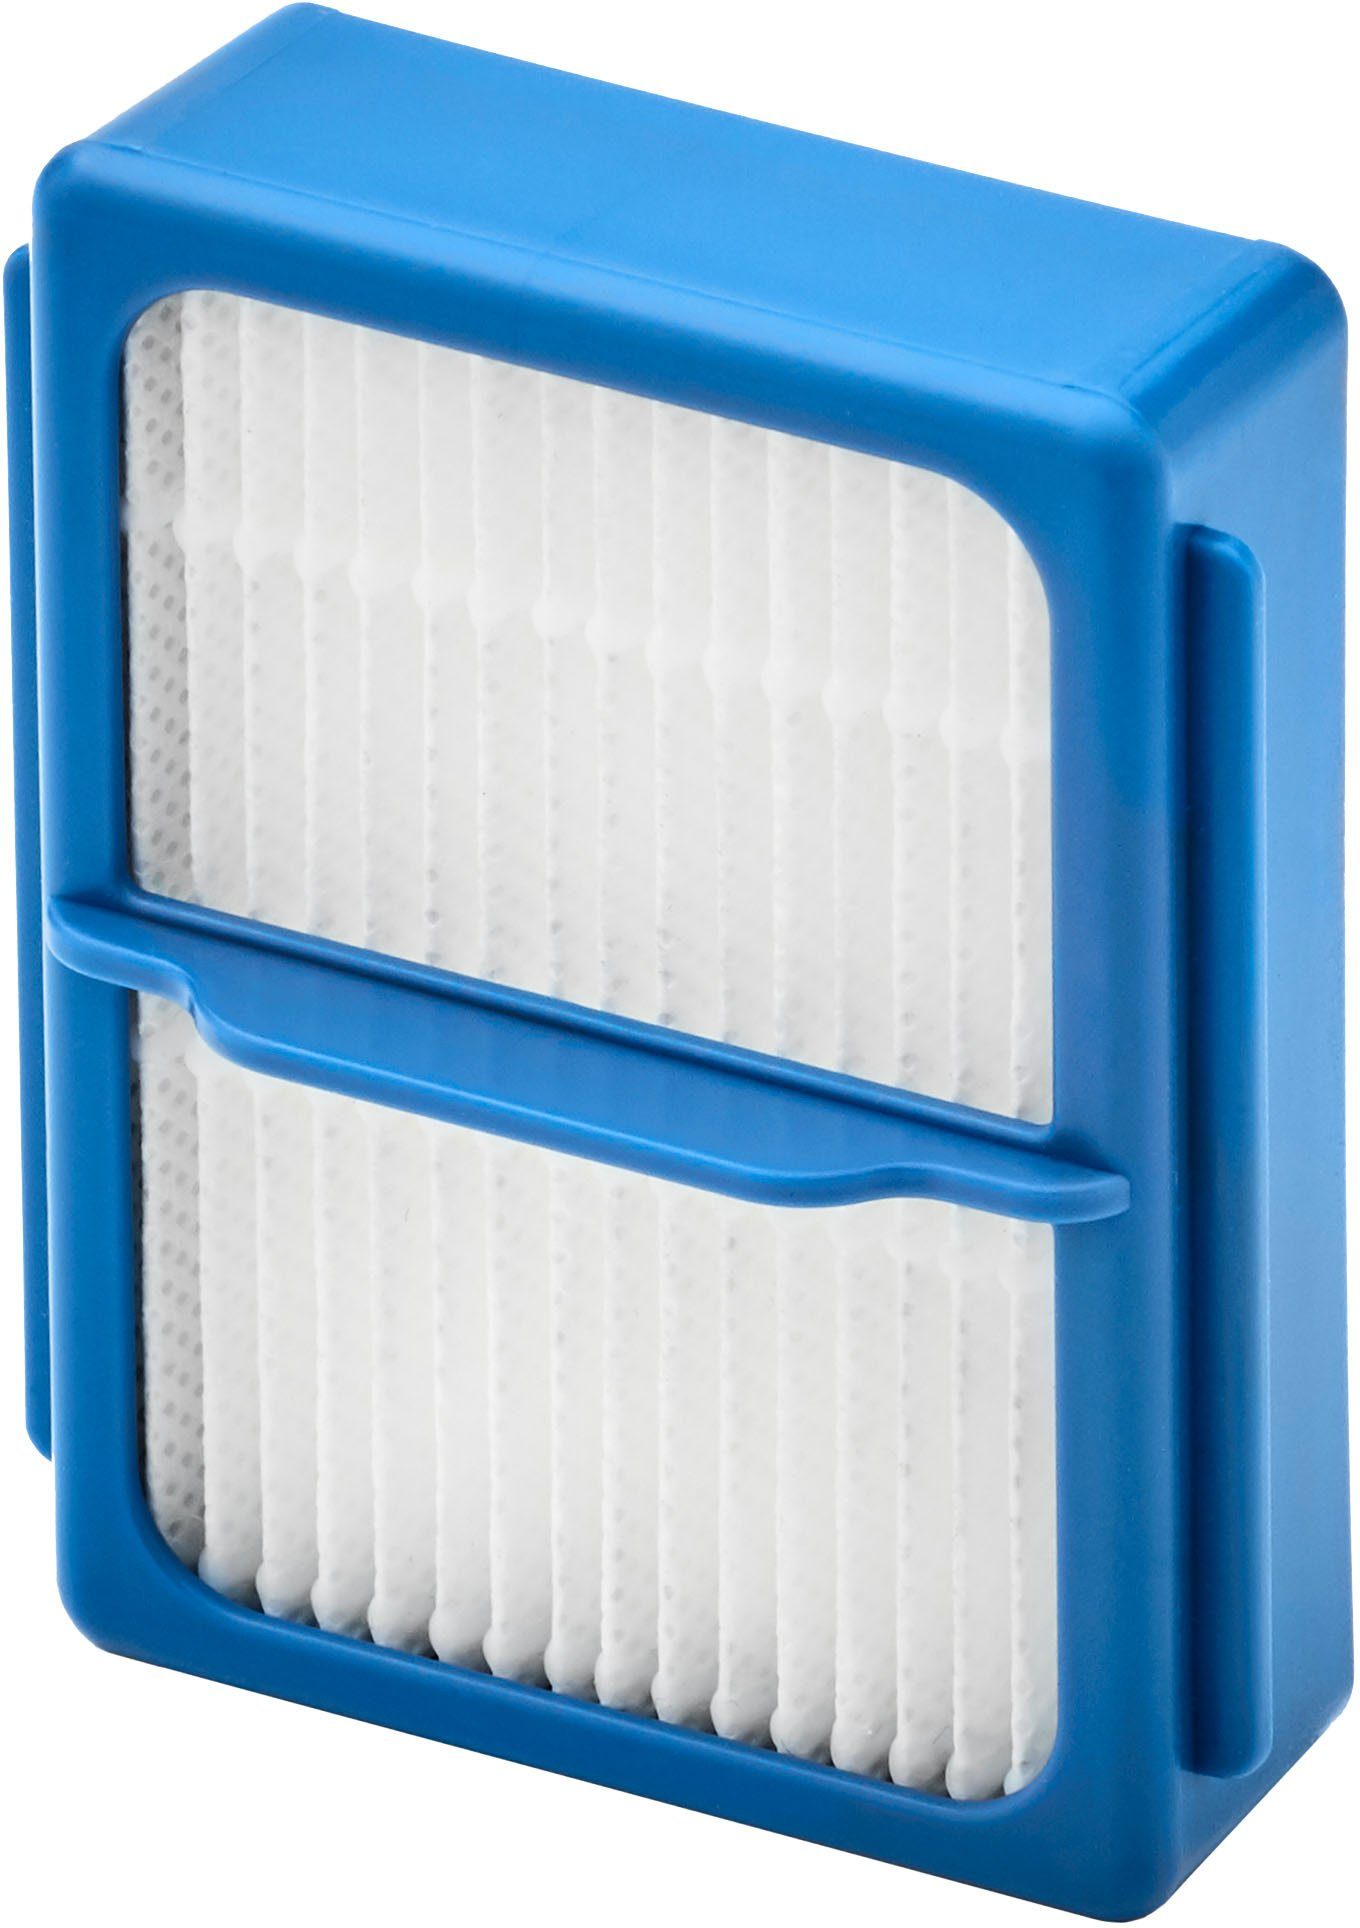 AEG Filter-Set ASKQX9, Hygienefilter Nr, mit E10 39013248, die 87575954, und Vormotor-  13557707, Art. Modelle für Zubehör